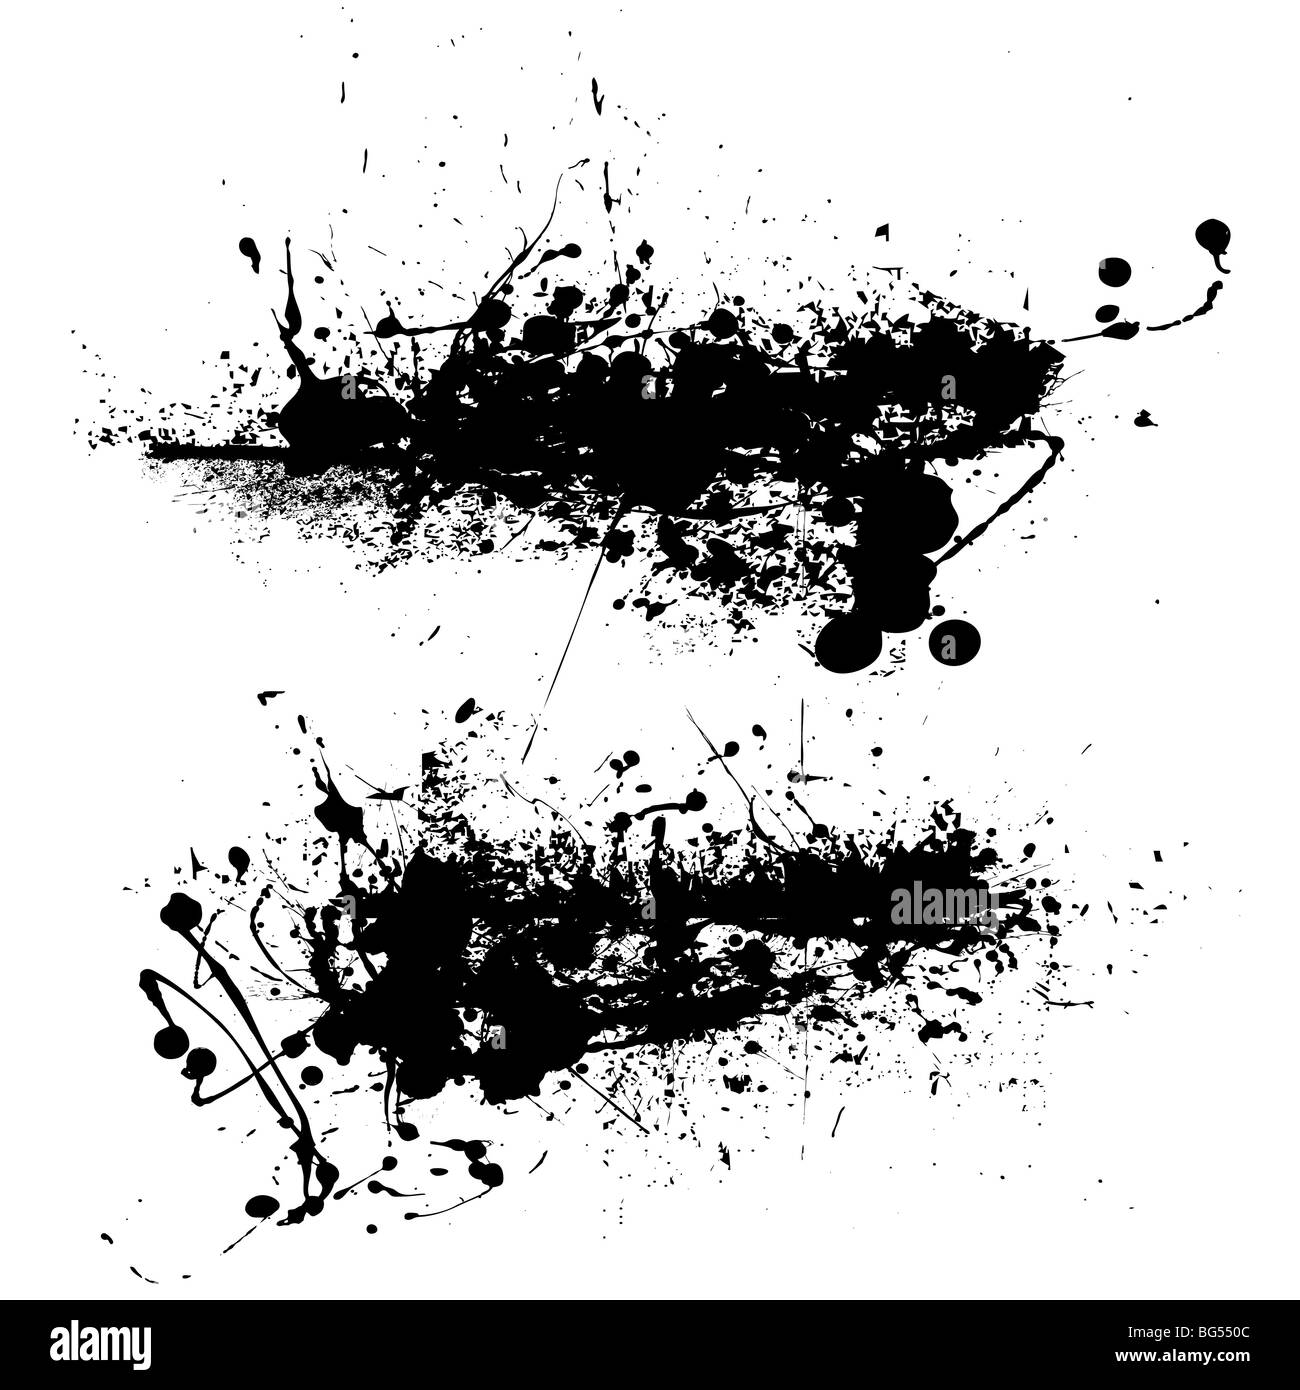 Zwei Tinte Splat Designs in schwarz mit gesprenkelten Effekt Stockfoto